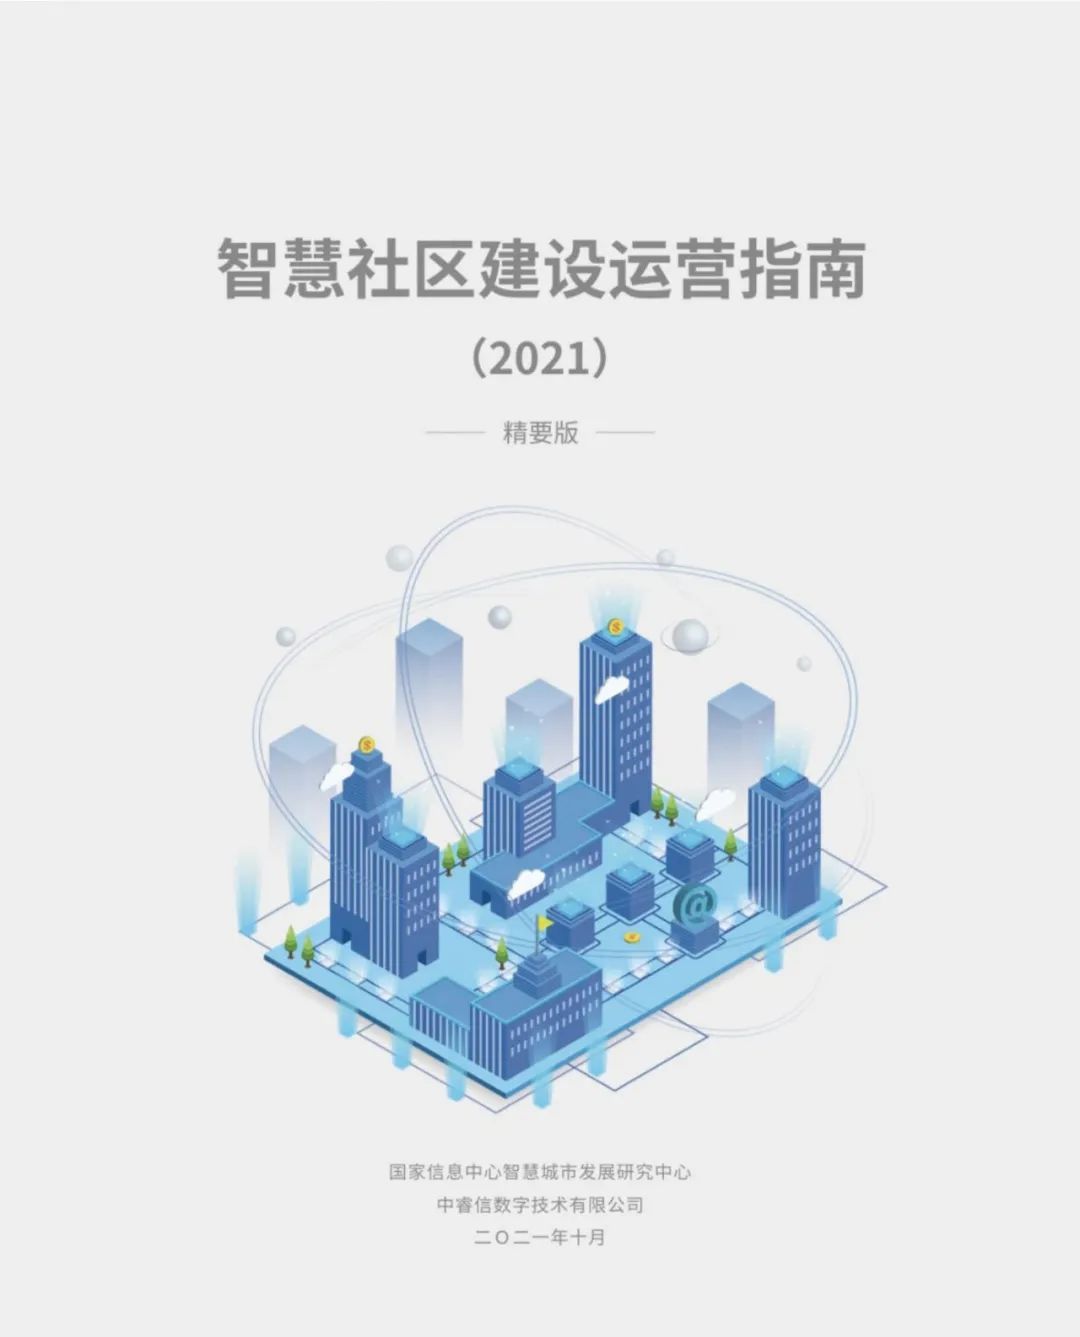 《智慧社区建设运营指南》（2021）发布，为智慧社区落地指明方向